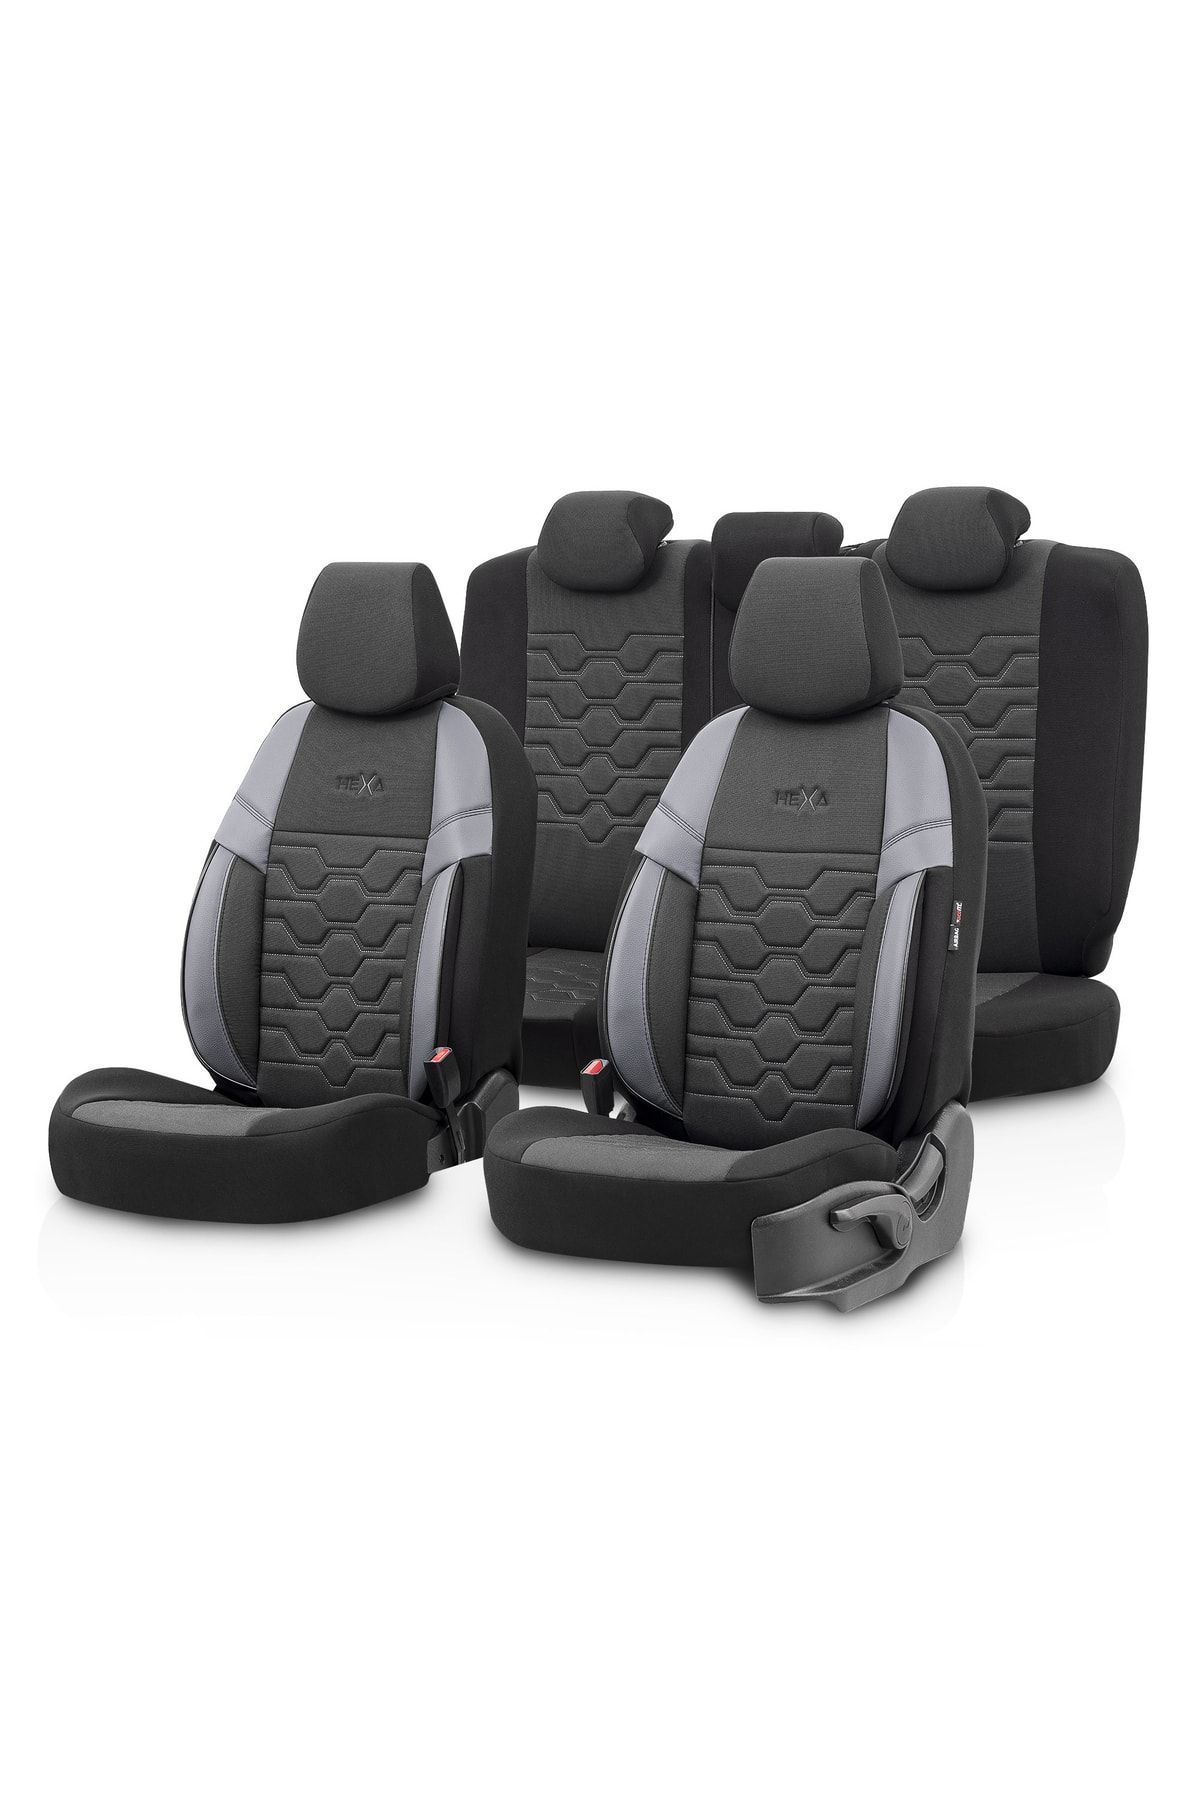 Otom Hexa Design Universal Seat Cover Smoked-black